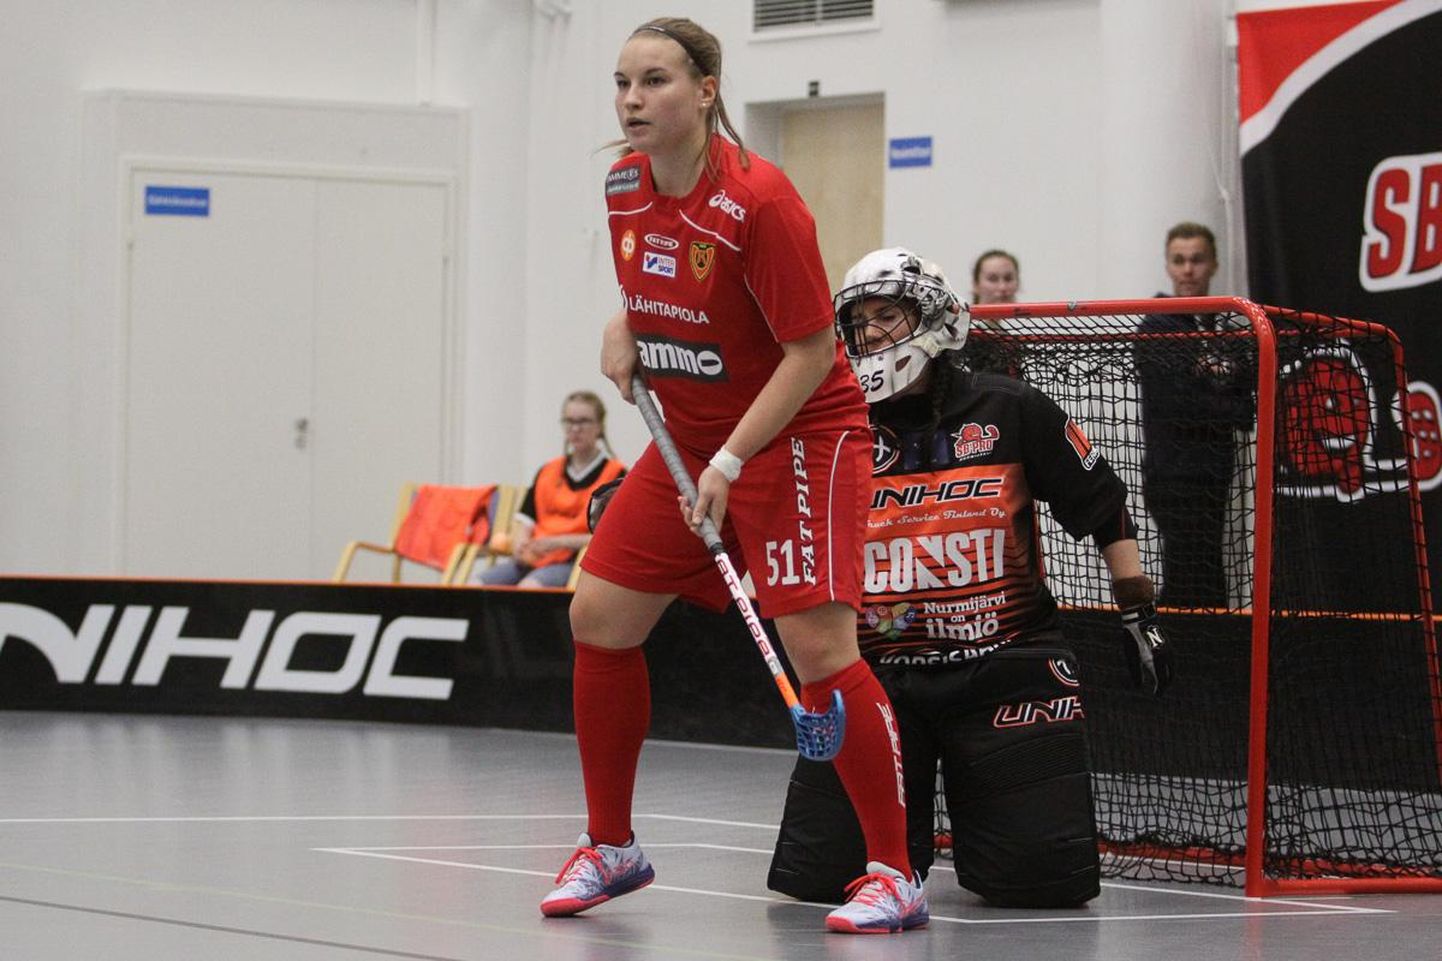 Lisaks kergejõustiklastele sai spordistipendiumi Viljandist pärit ja praegu Soome meistriliigas Koovee saalihoki tiimis mängiv Eesti koondislane Diana Klavan.